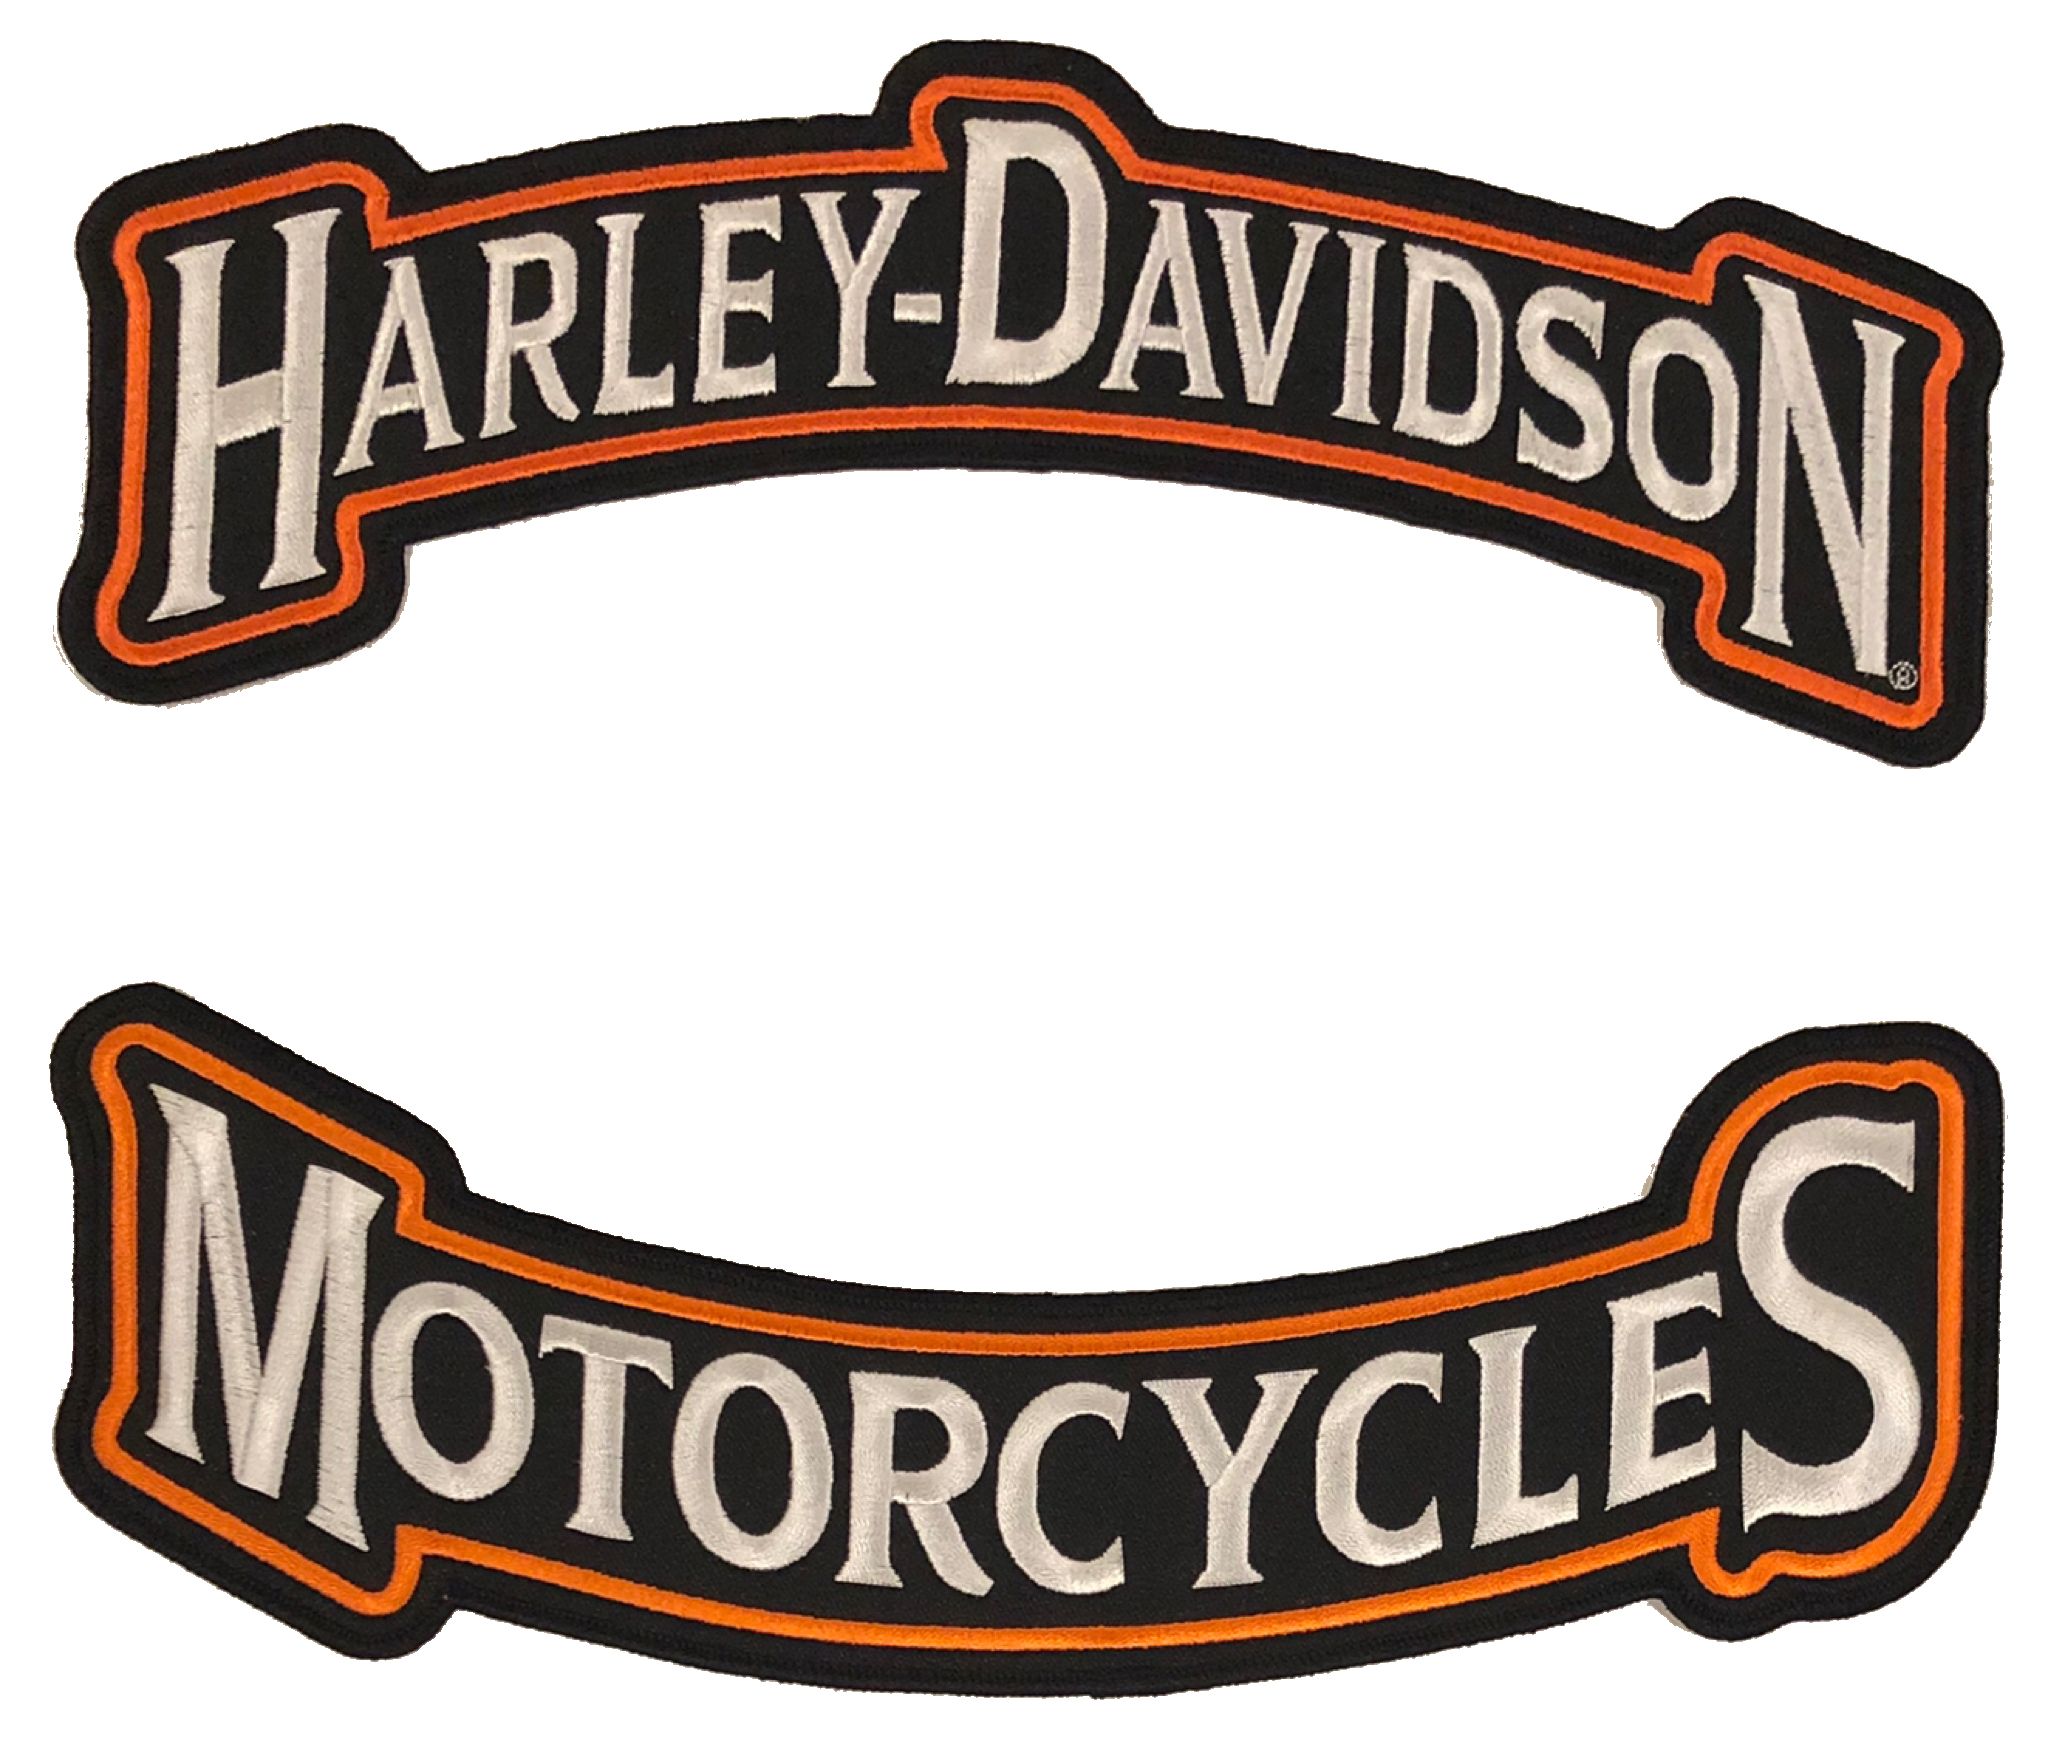 Patch Harley Davidson